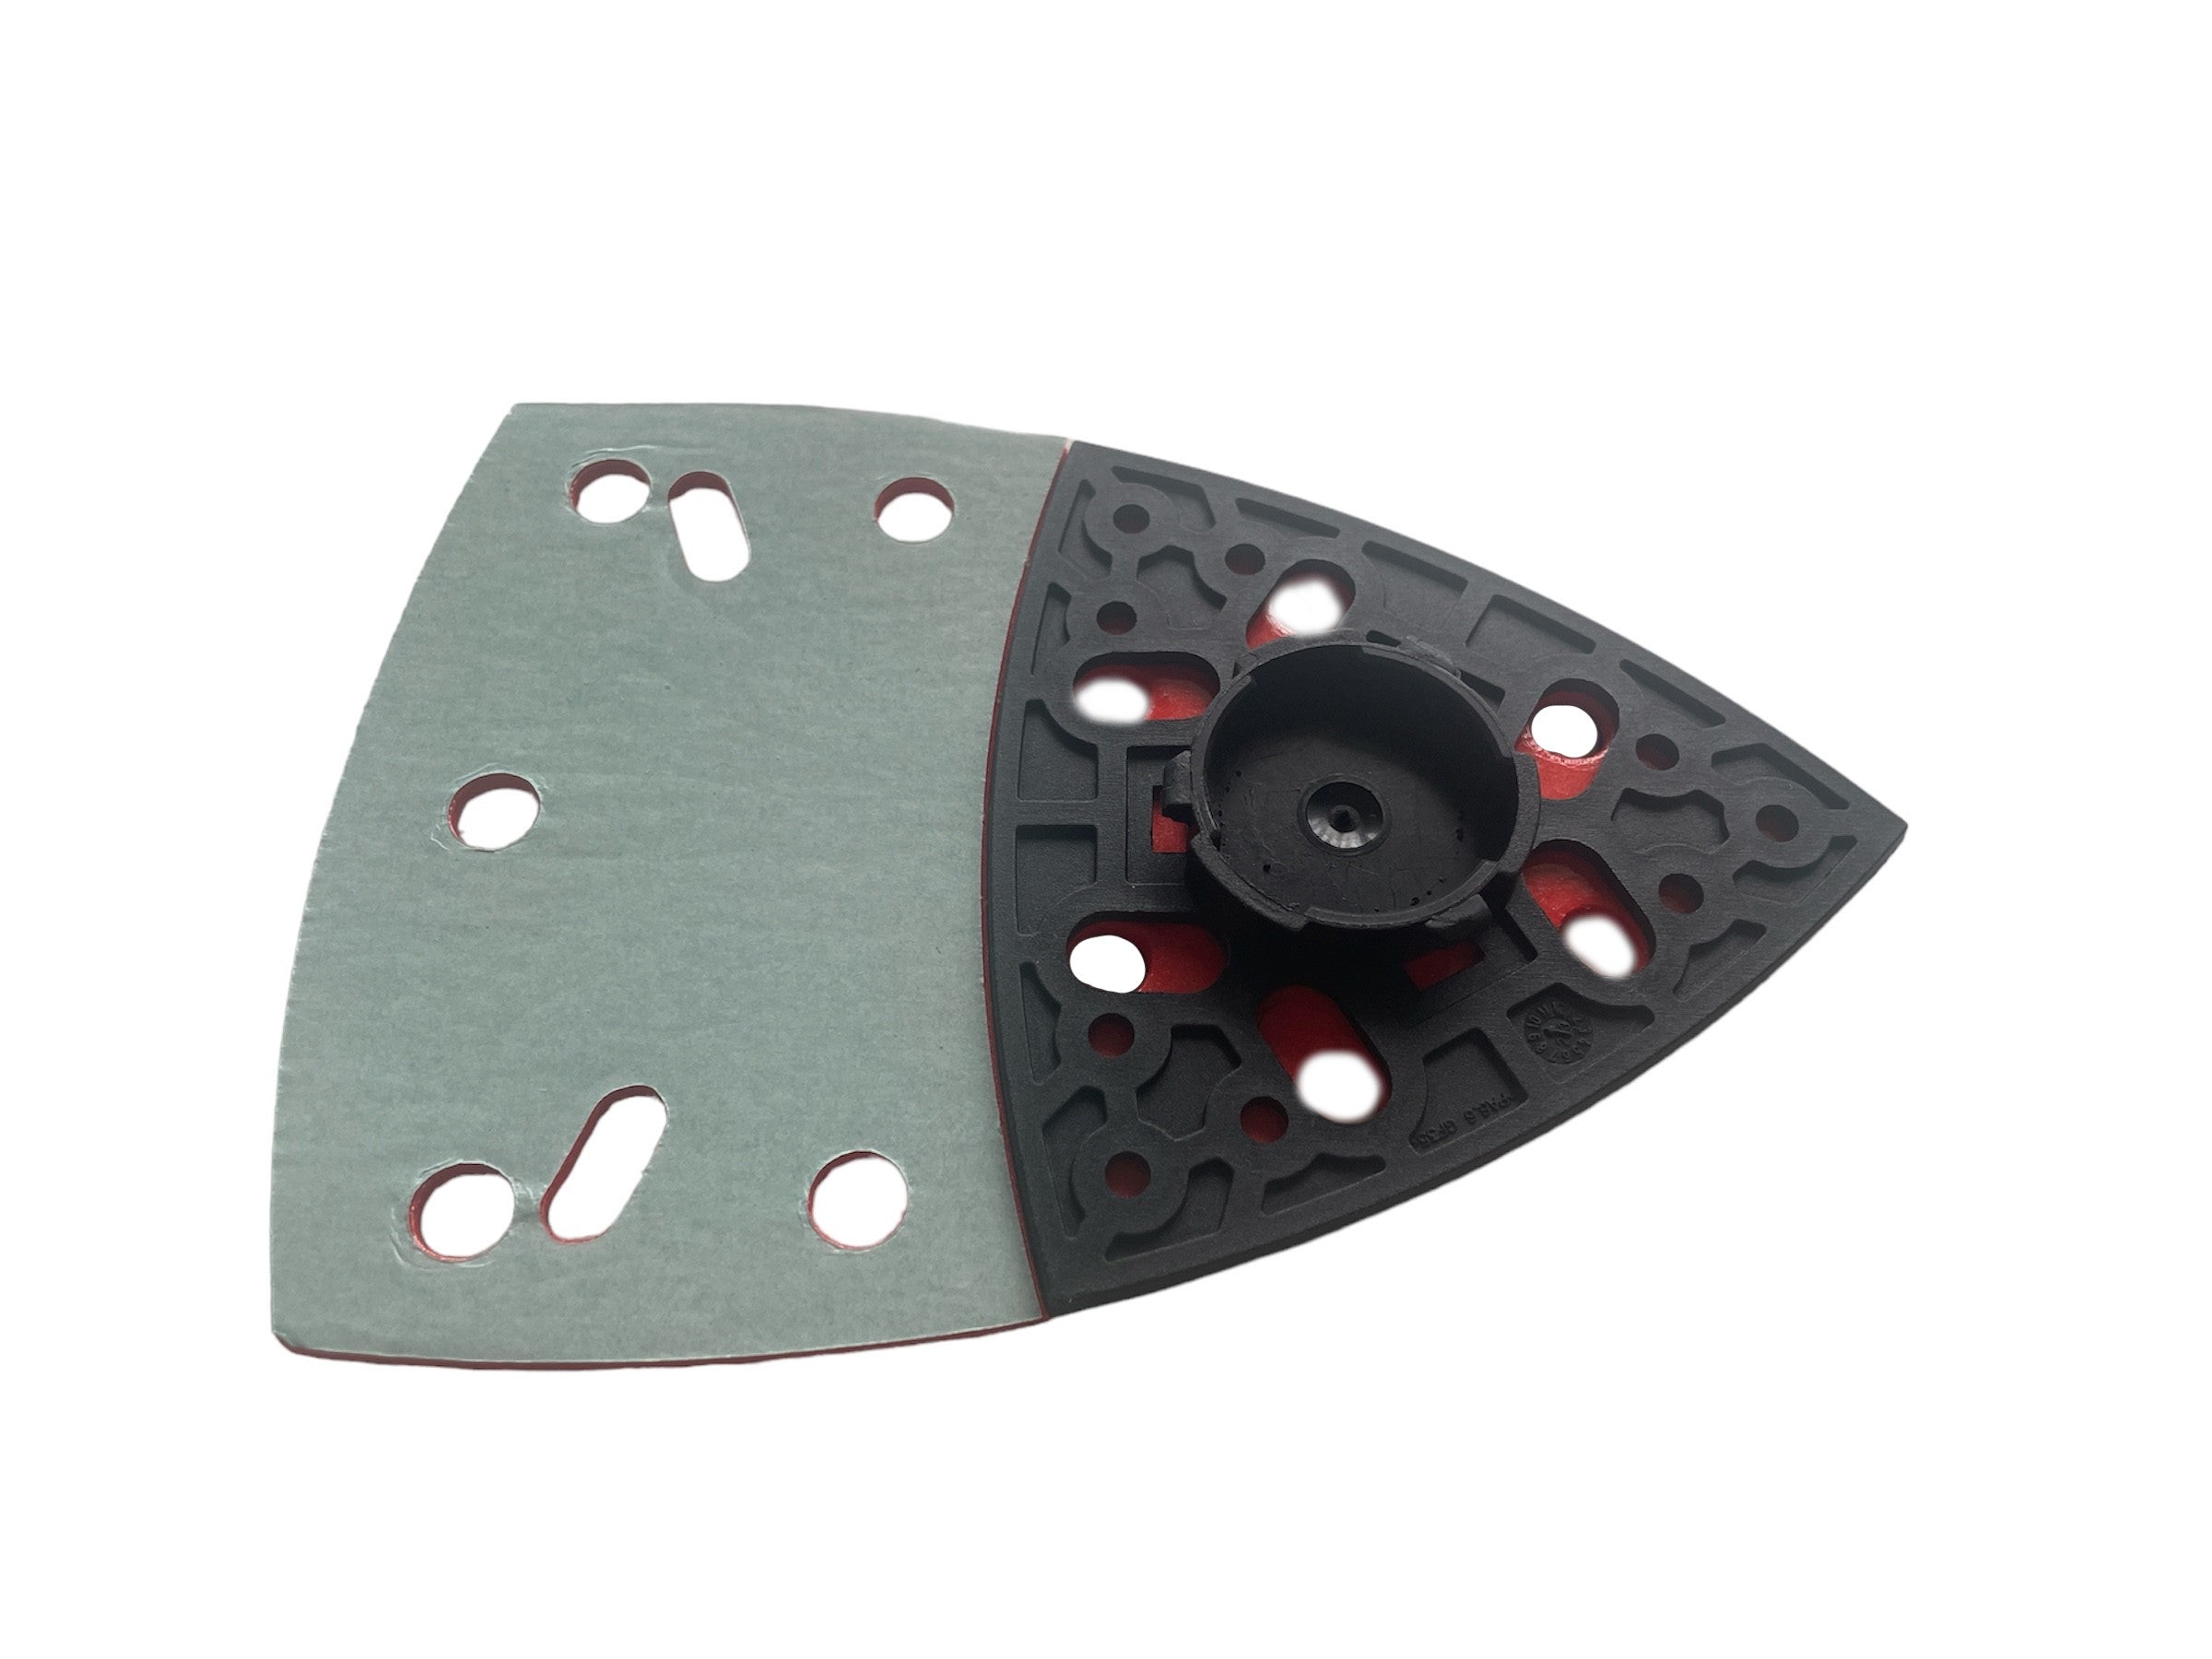 Bosch DIY Schleifplatte / Drehplatte mit Klett für Multischleifer PSM 160 A / PSM 1400 Ventaro